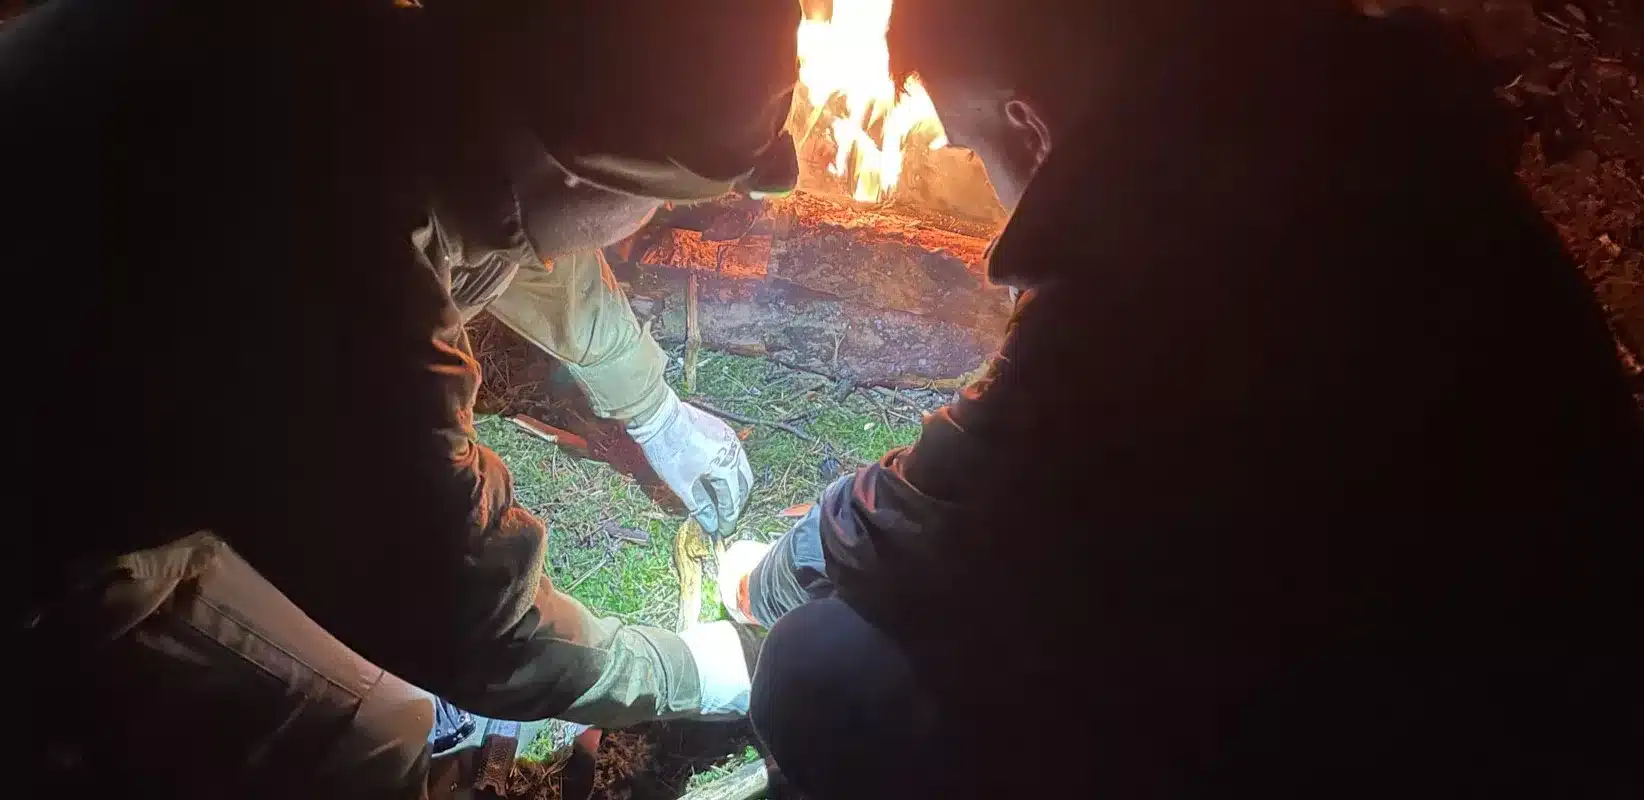 Instruktor indywidualnie uczy rozpalania ogniska noca